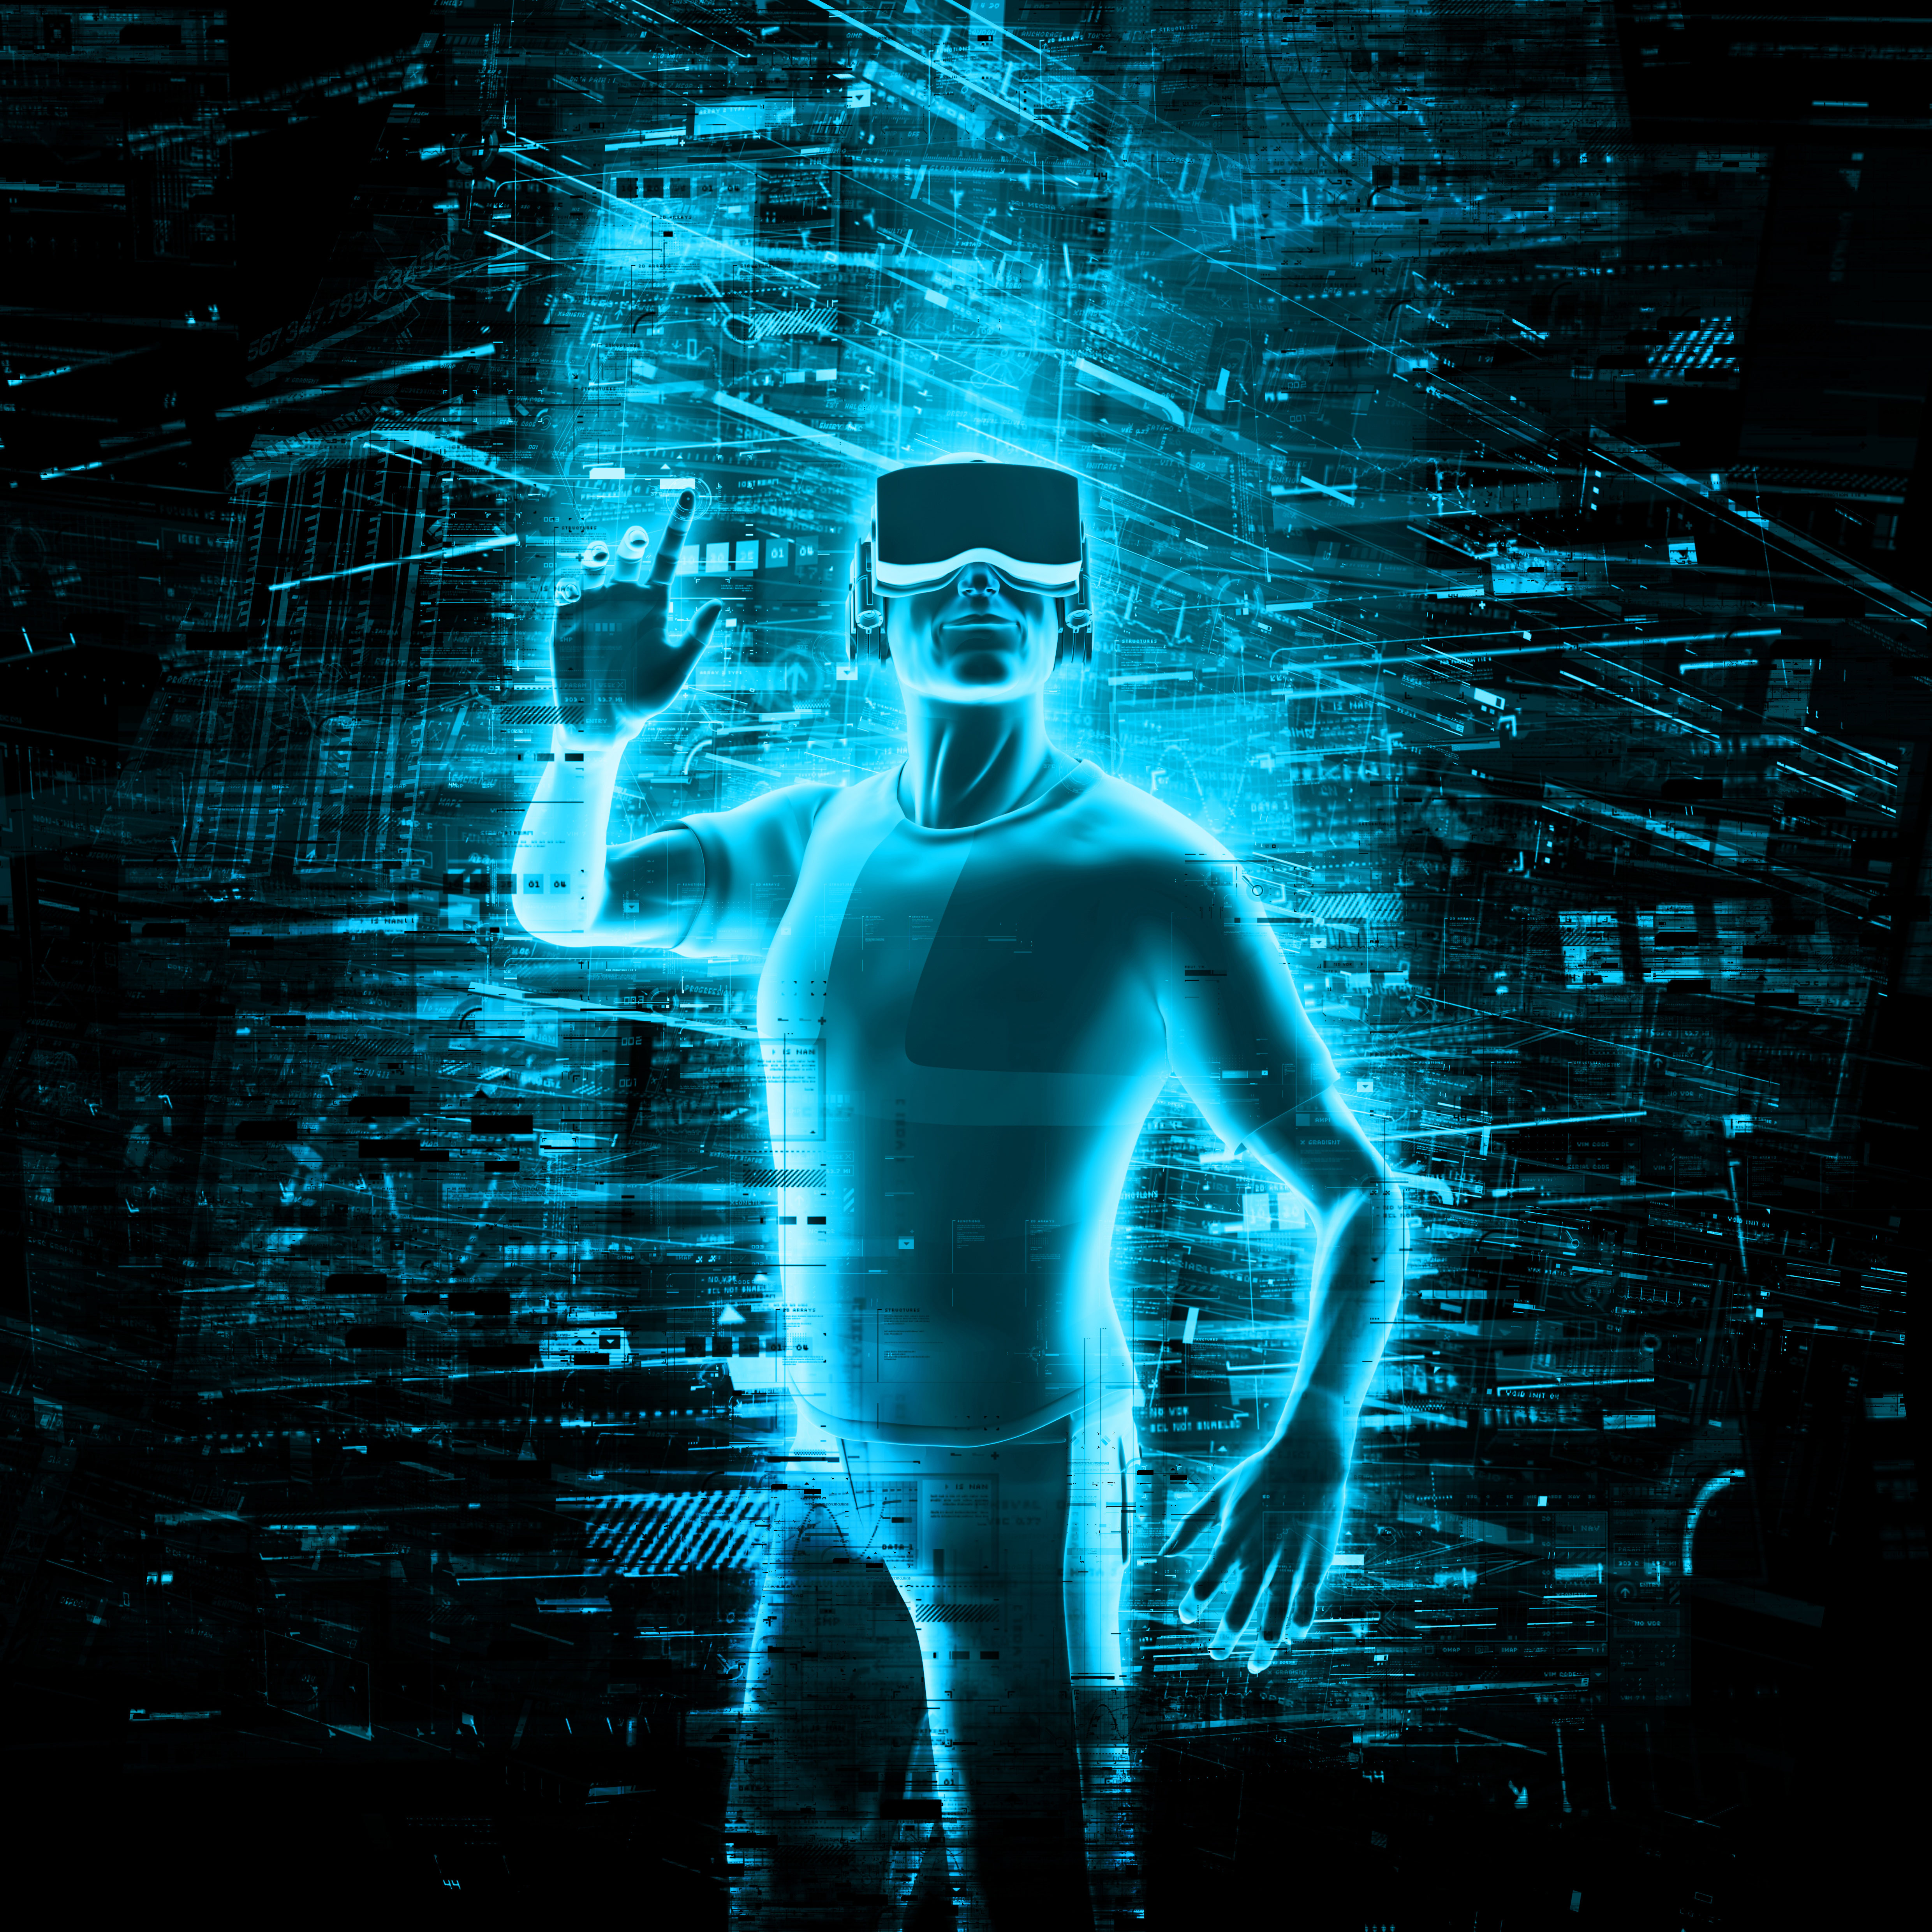 fond d'écran de réalité virtuelle,humain,corps humain,bleu électrique,ténèbres,la photographie